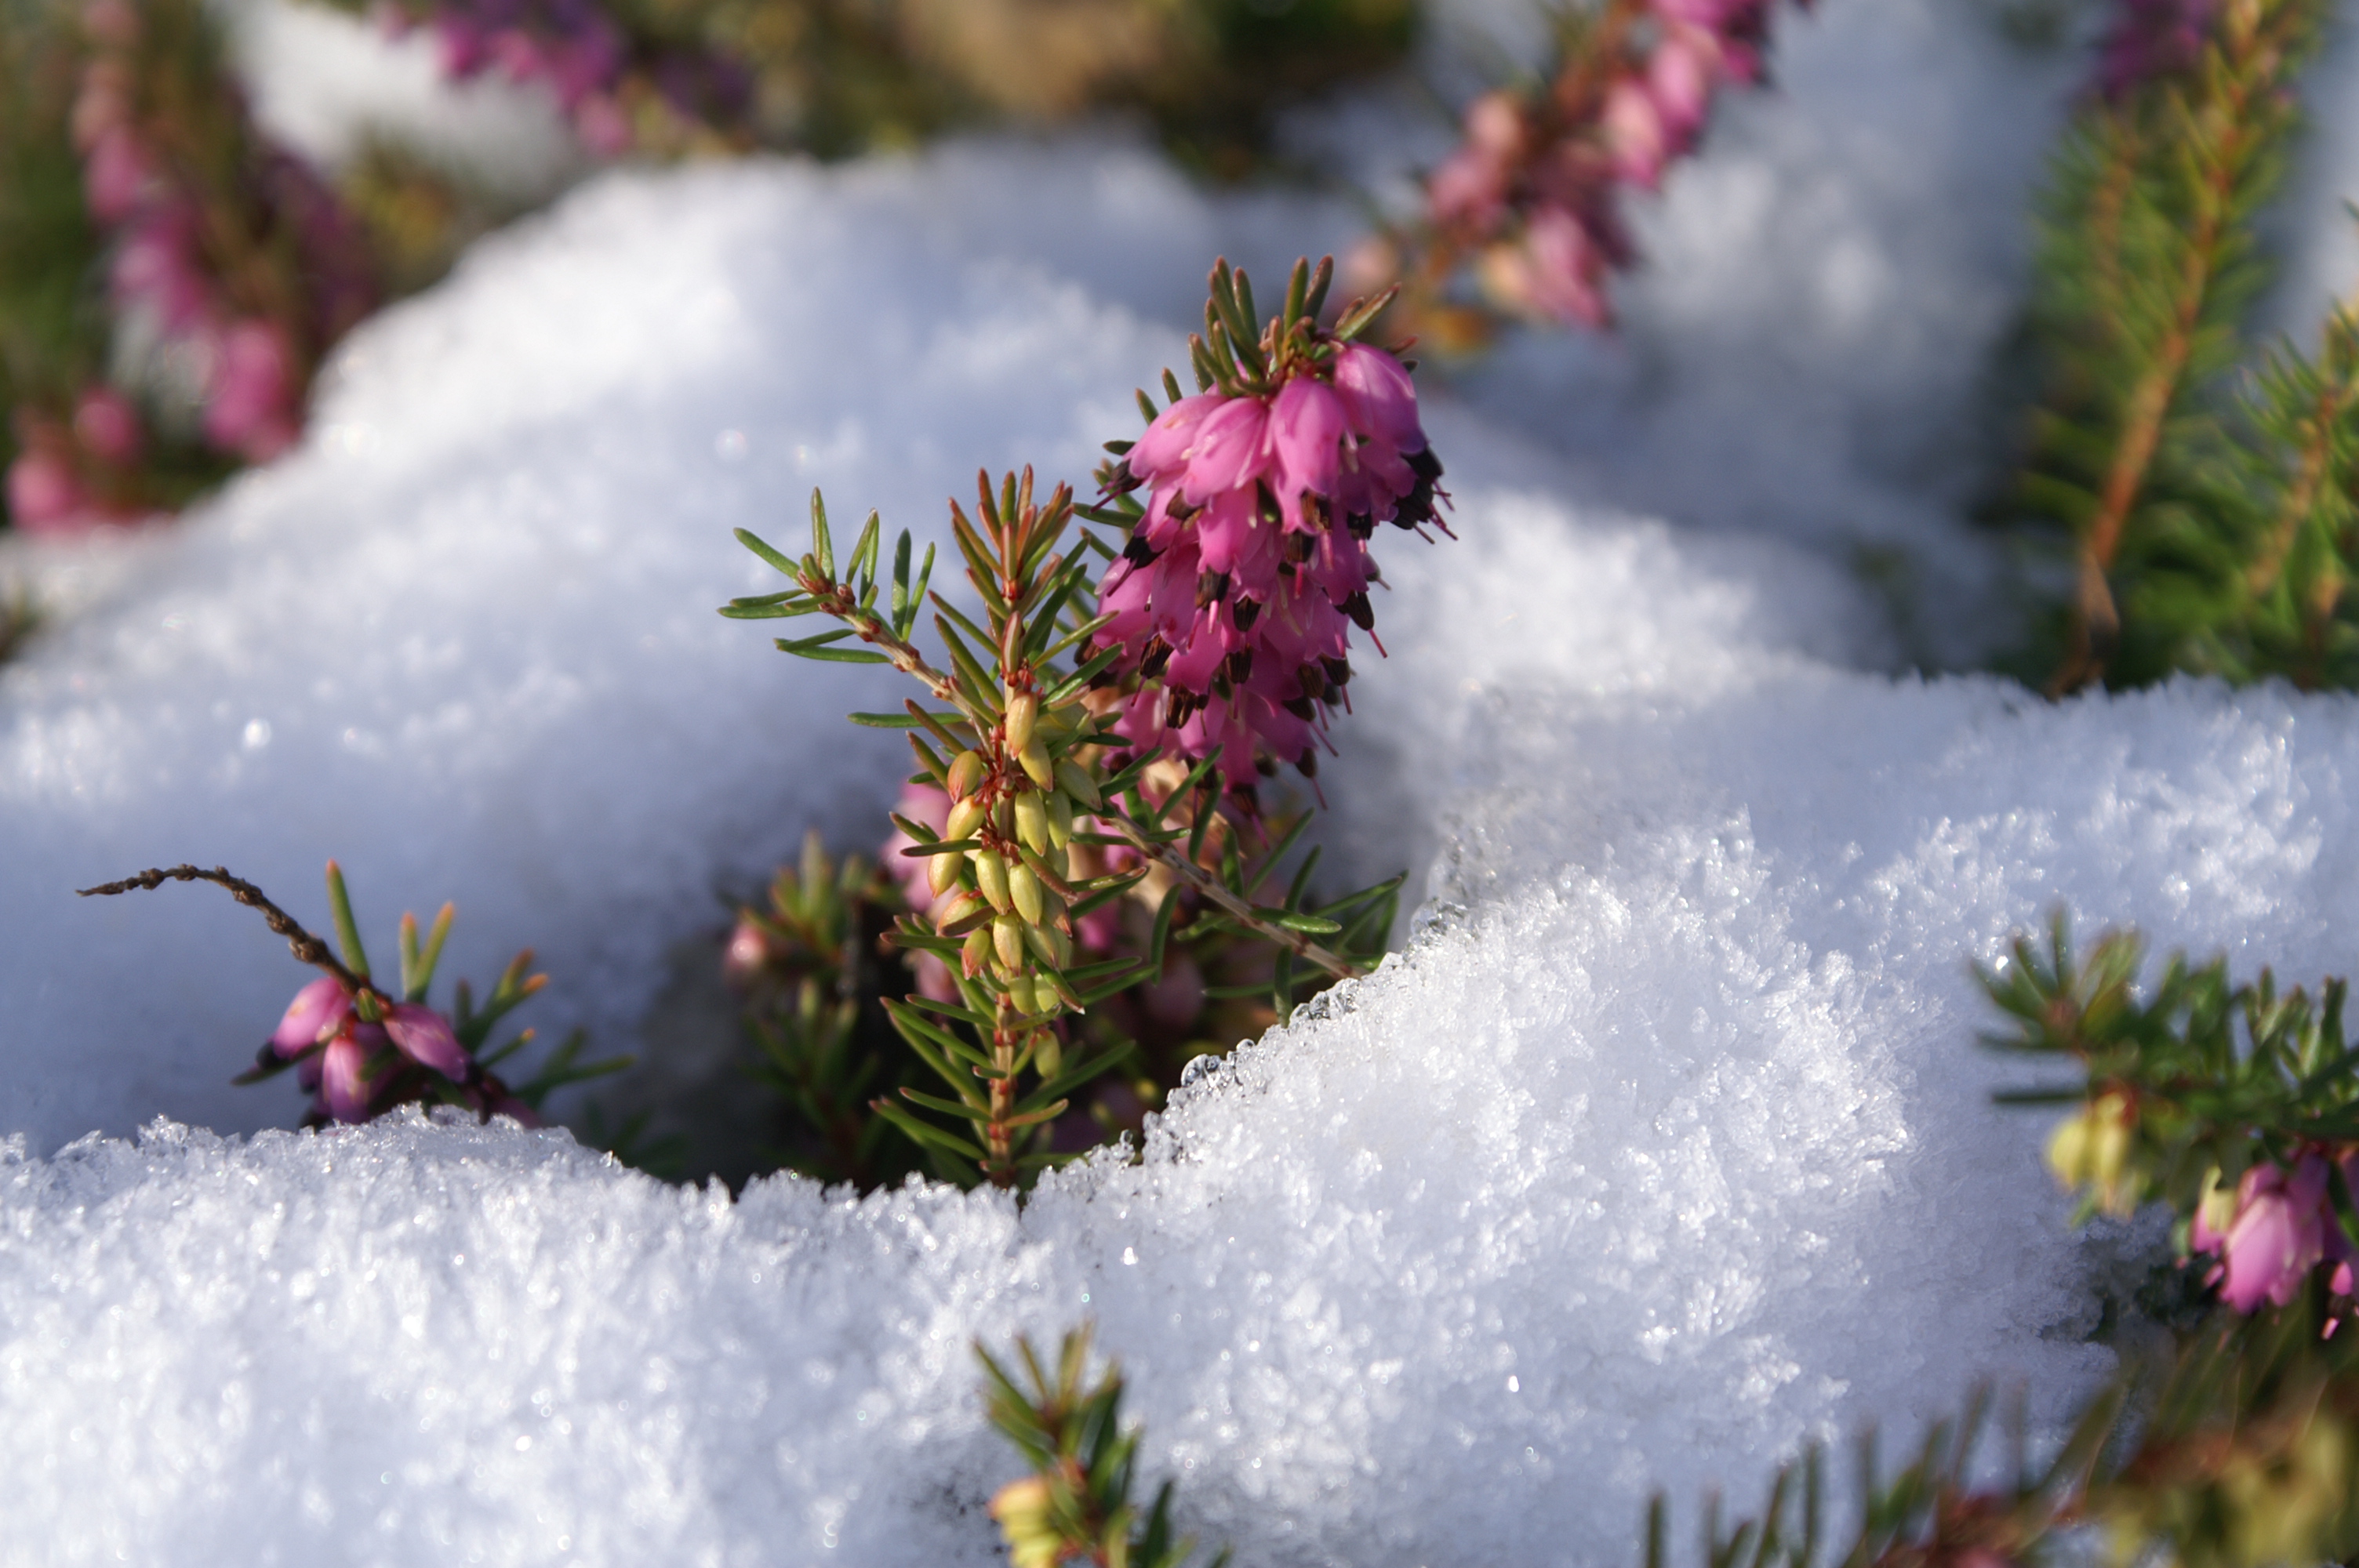 Les astuces pour protéger vos plantes du froid